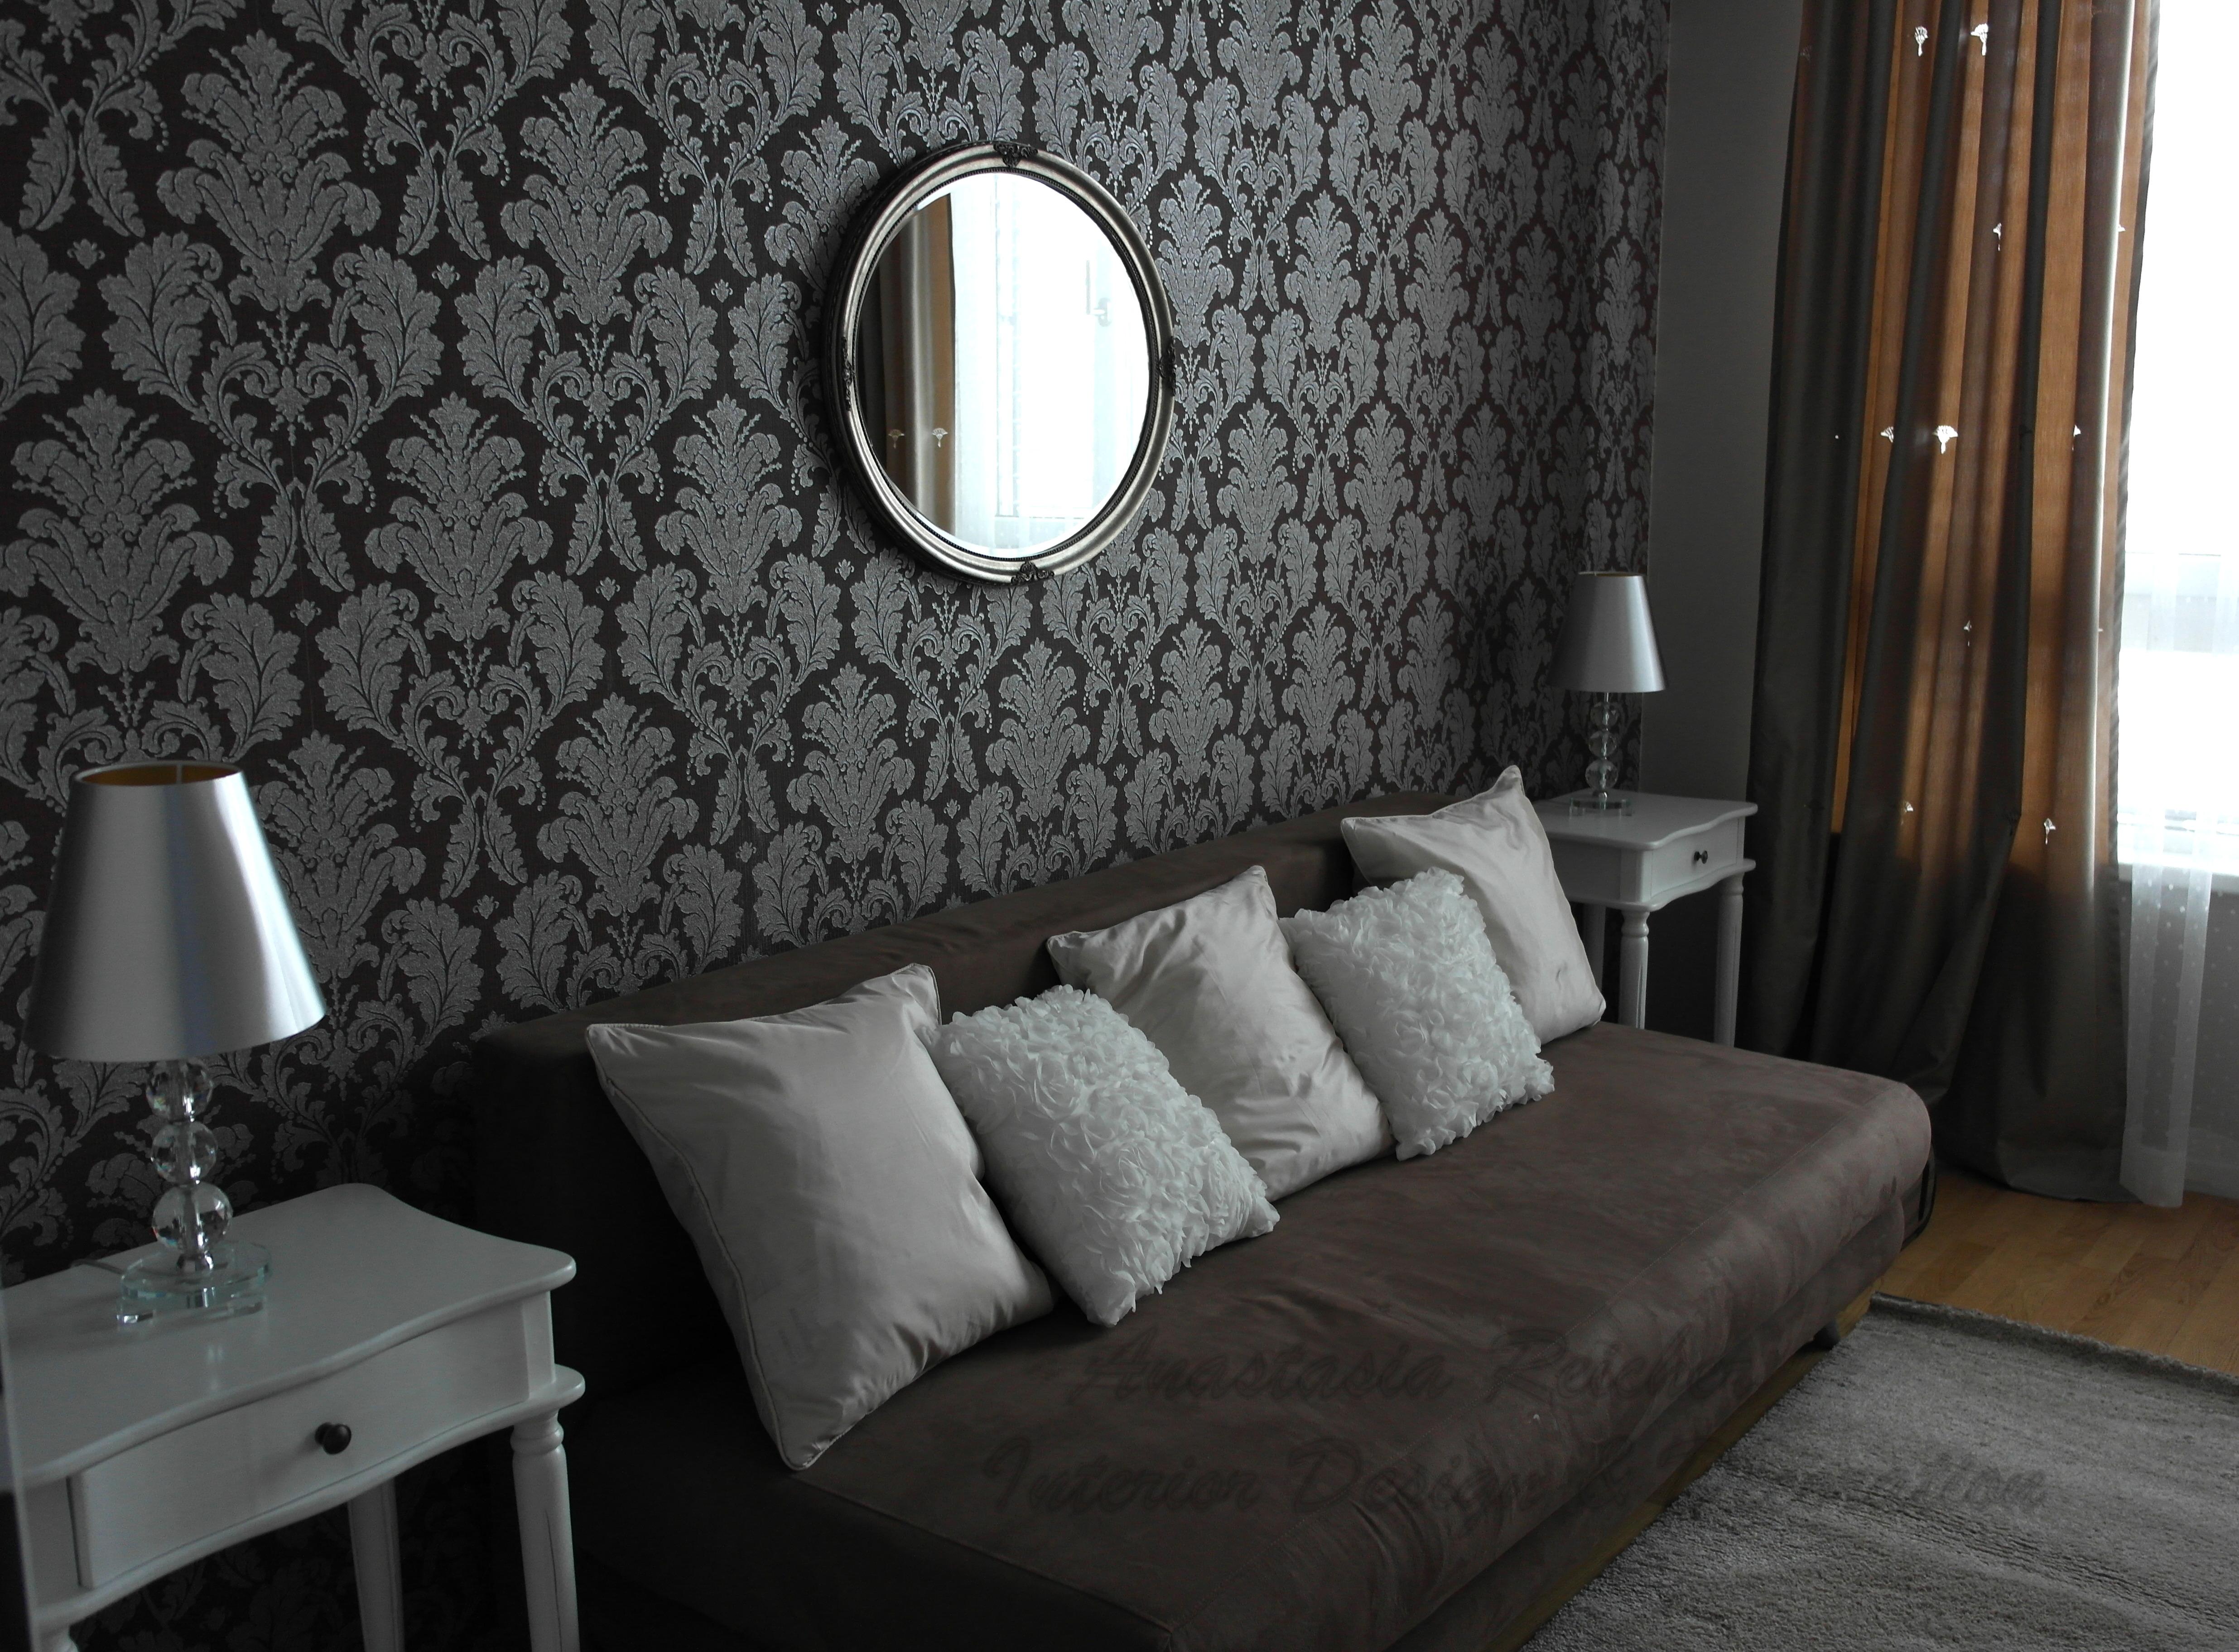 Gästezimmer in Braun #gästezimmer #schlafsofa ©Anastasia Reicher Interior Design